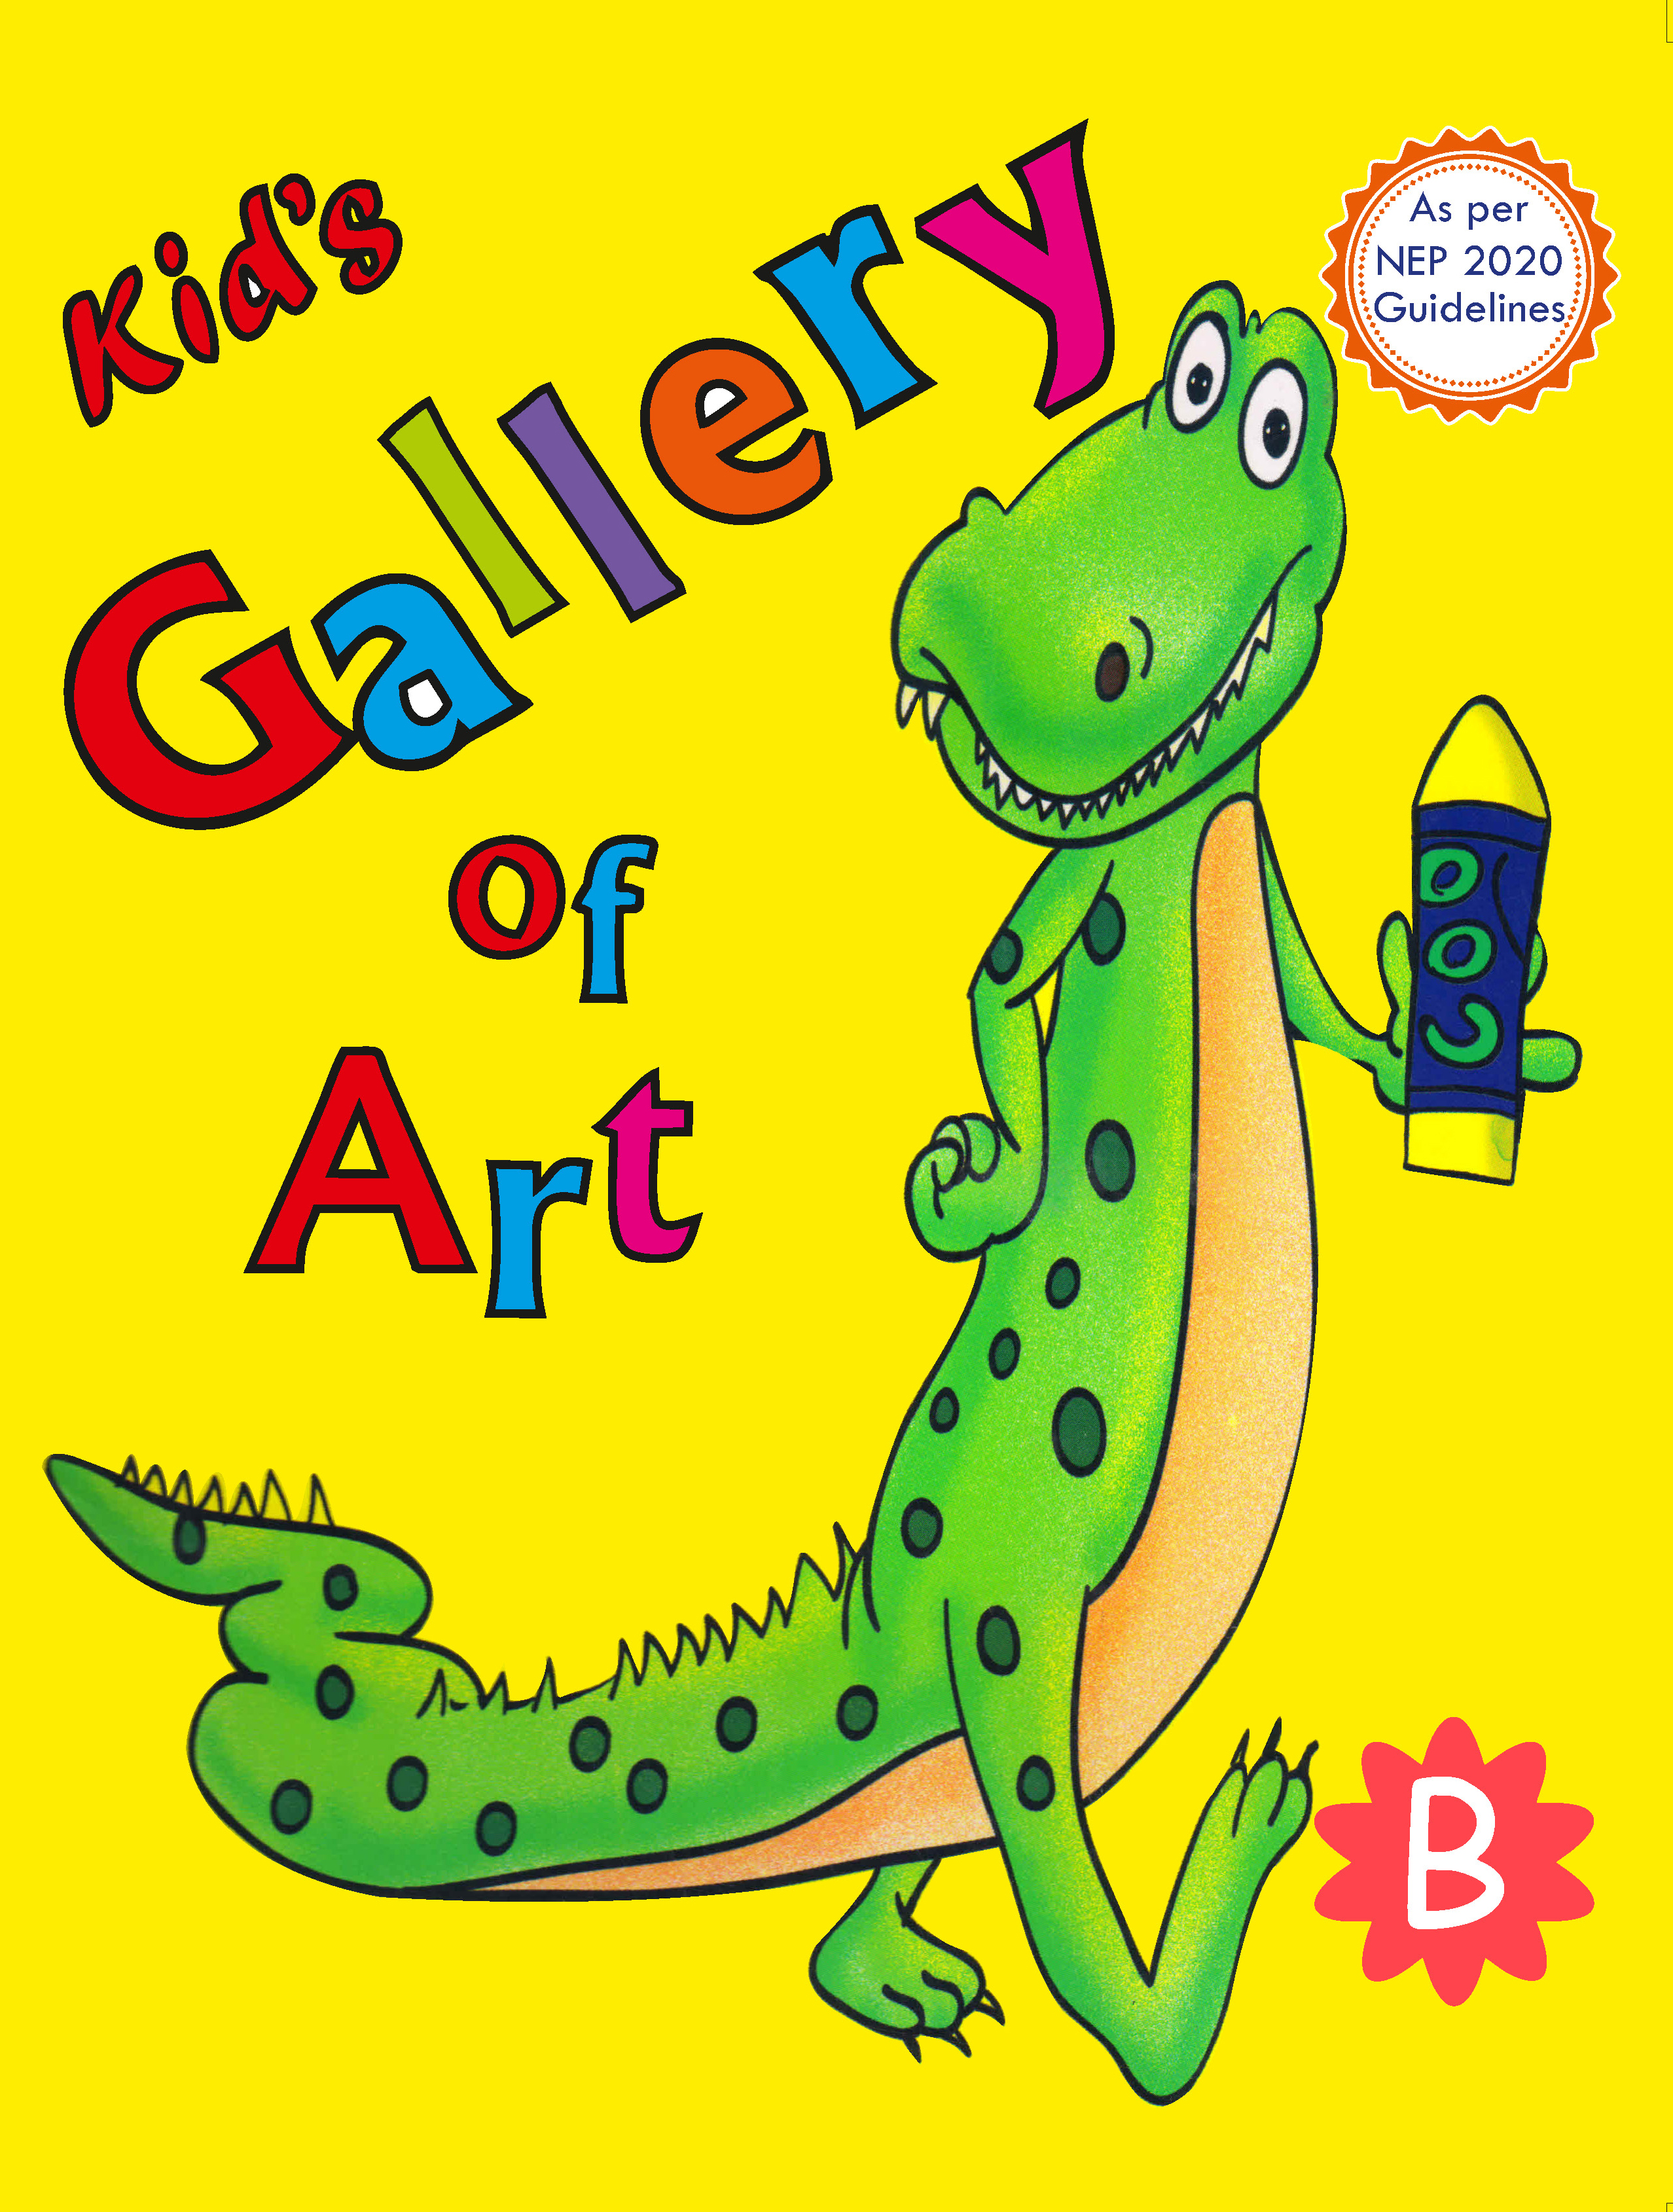 KID'S GALLERY OF ART B